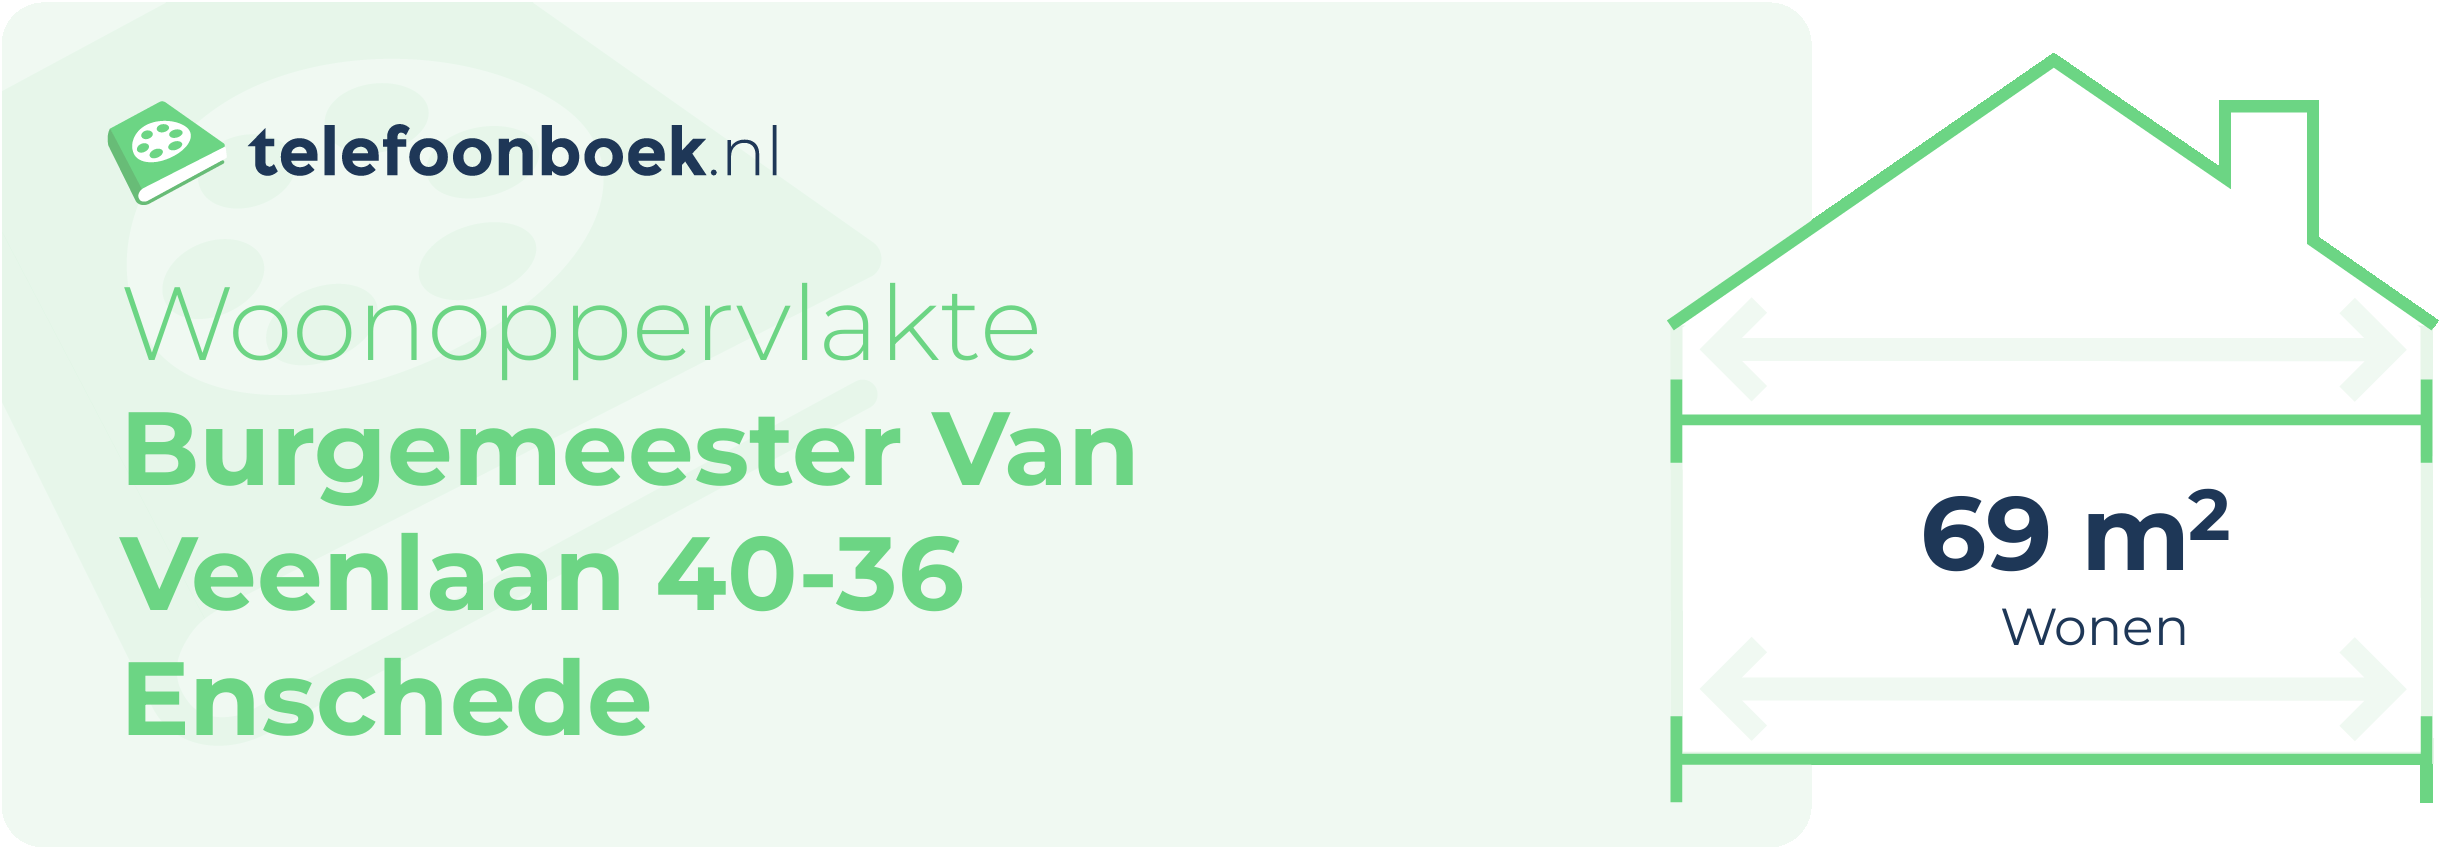 Woonoppervlakte Burgemeester Van Veenlaan 40-36 Enschede